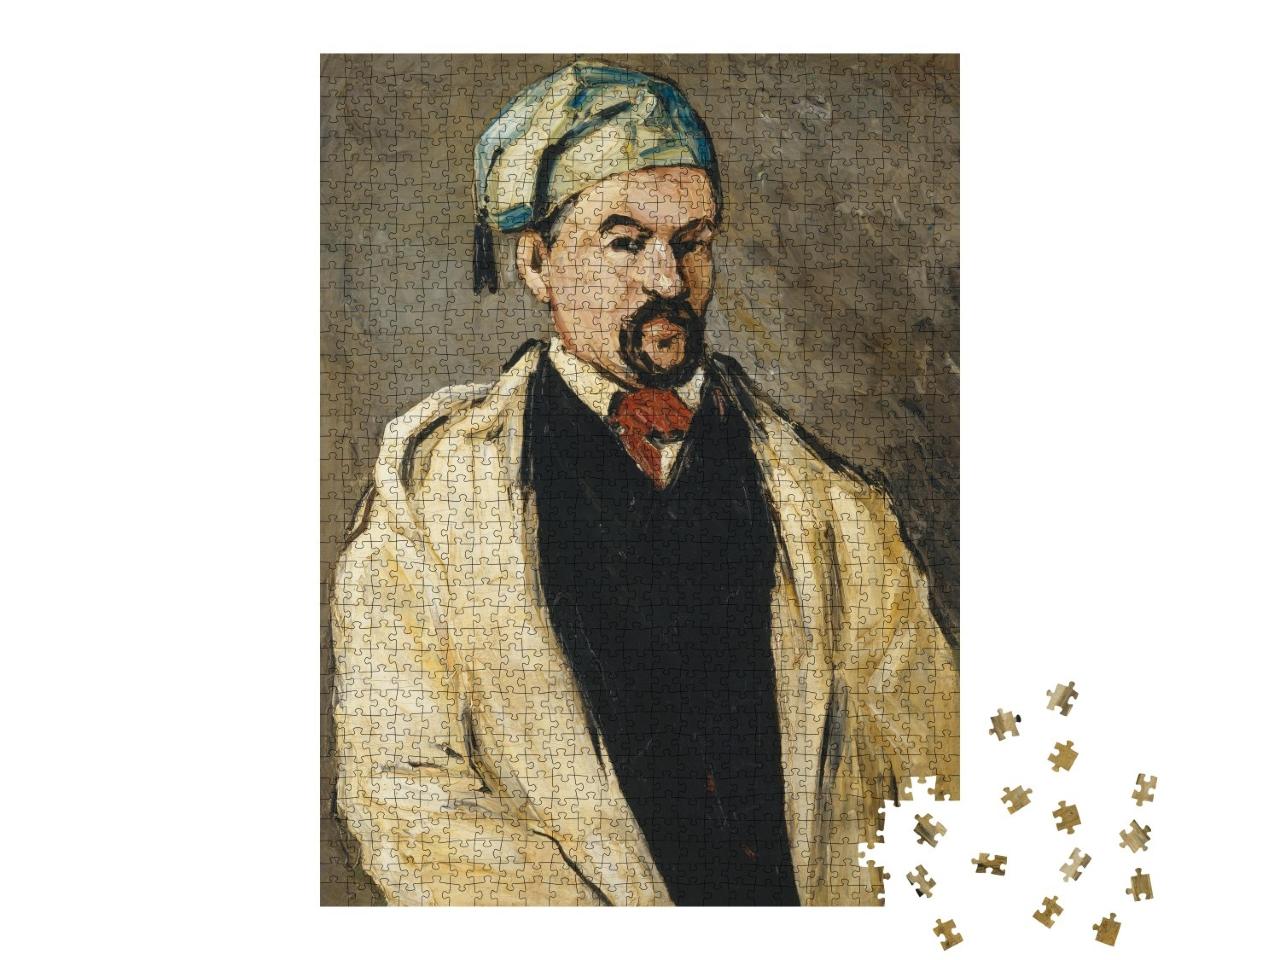 Puzzle 1000 Teile „Paul Cézanne - Antoine Dominique Sauveur Aubert“